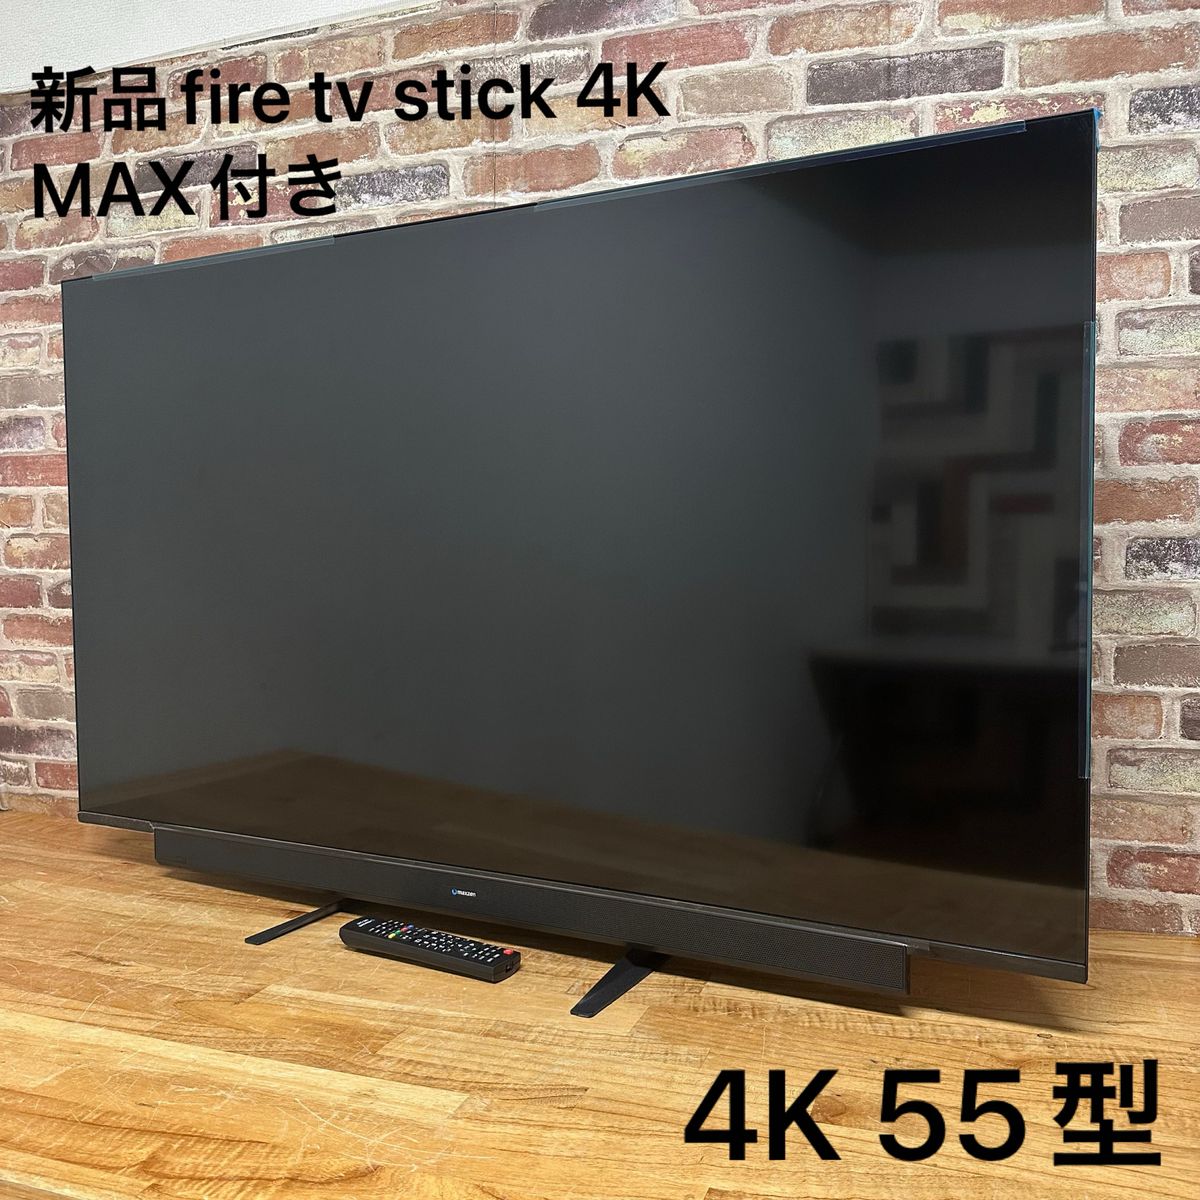 maxzen 55インチ 4K 液晶テレビ JU55SK03 2020年モデル 新品fire tv stick 4K MAX付き